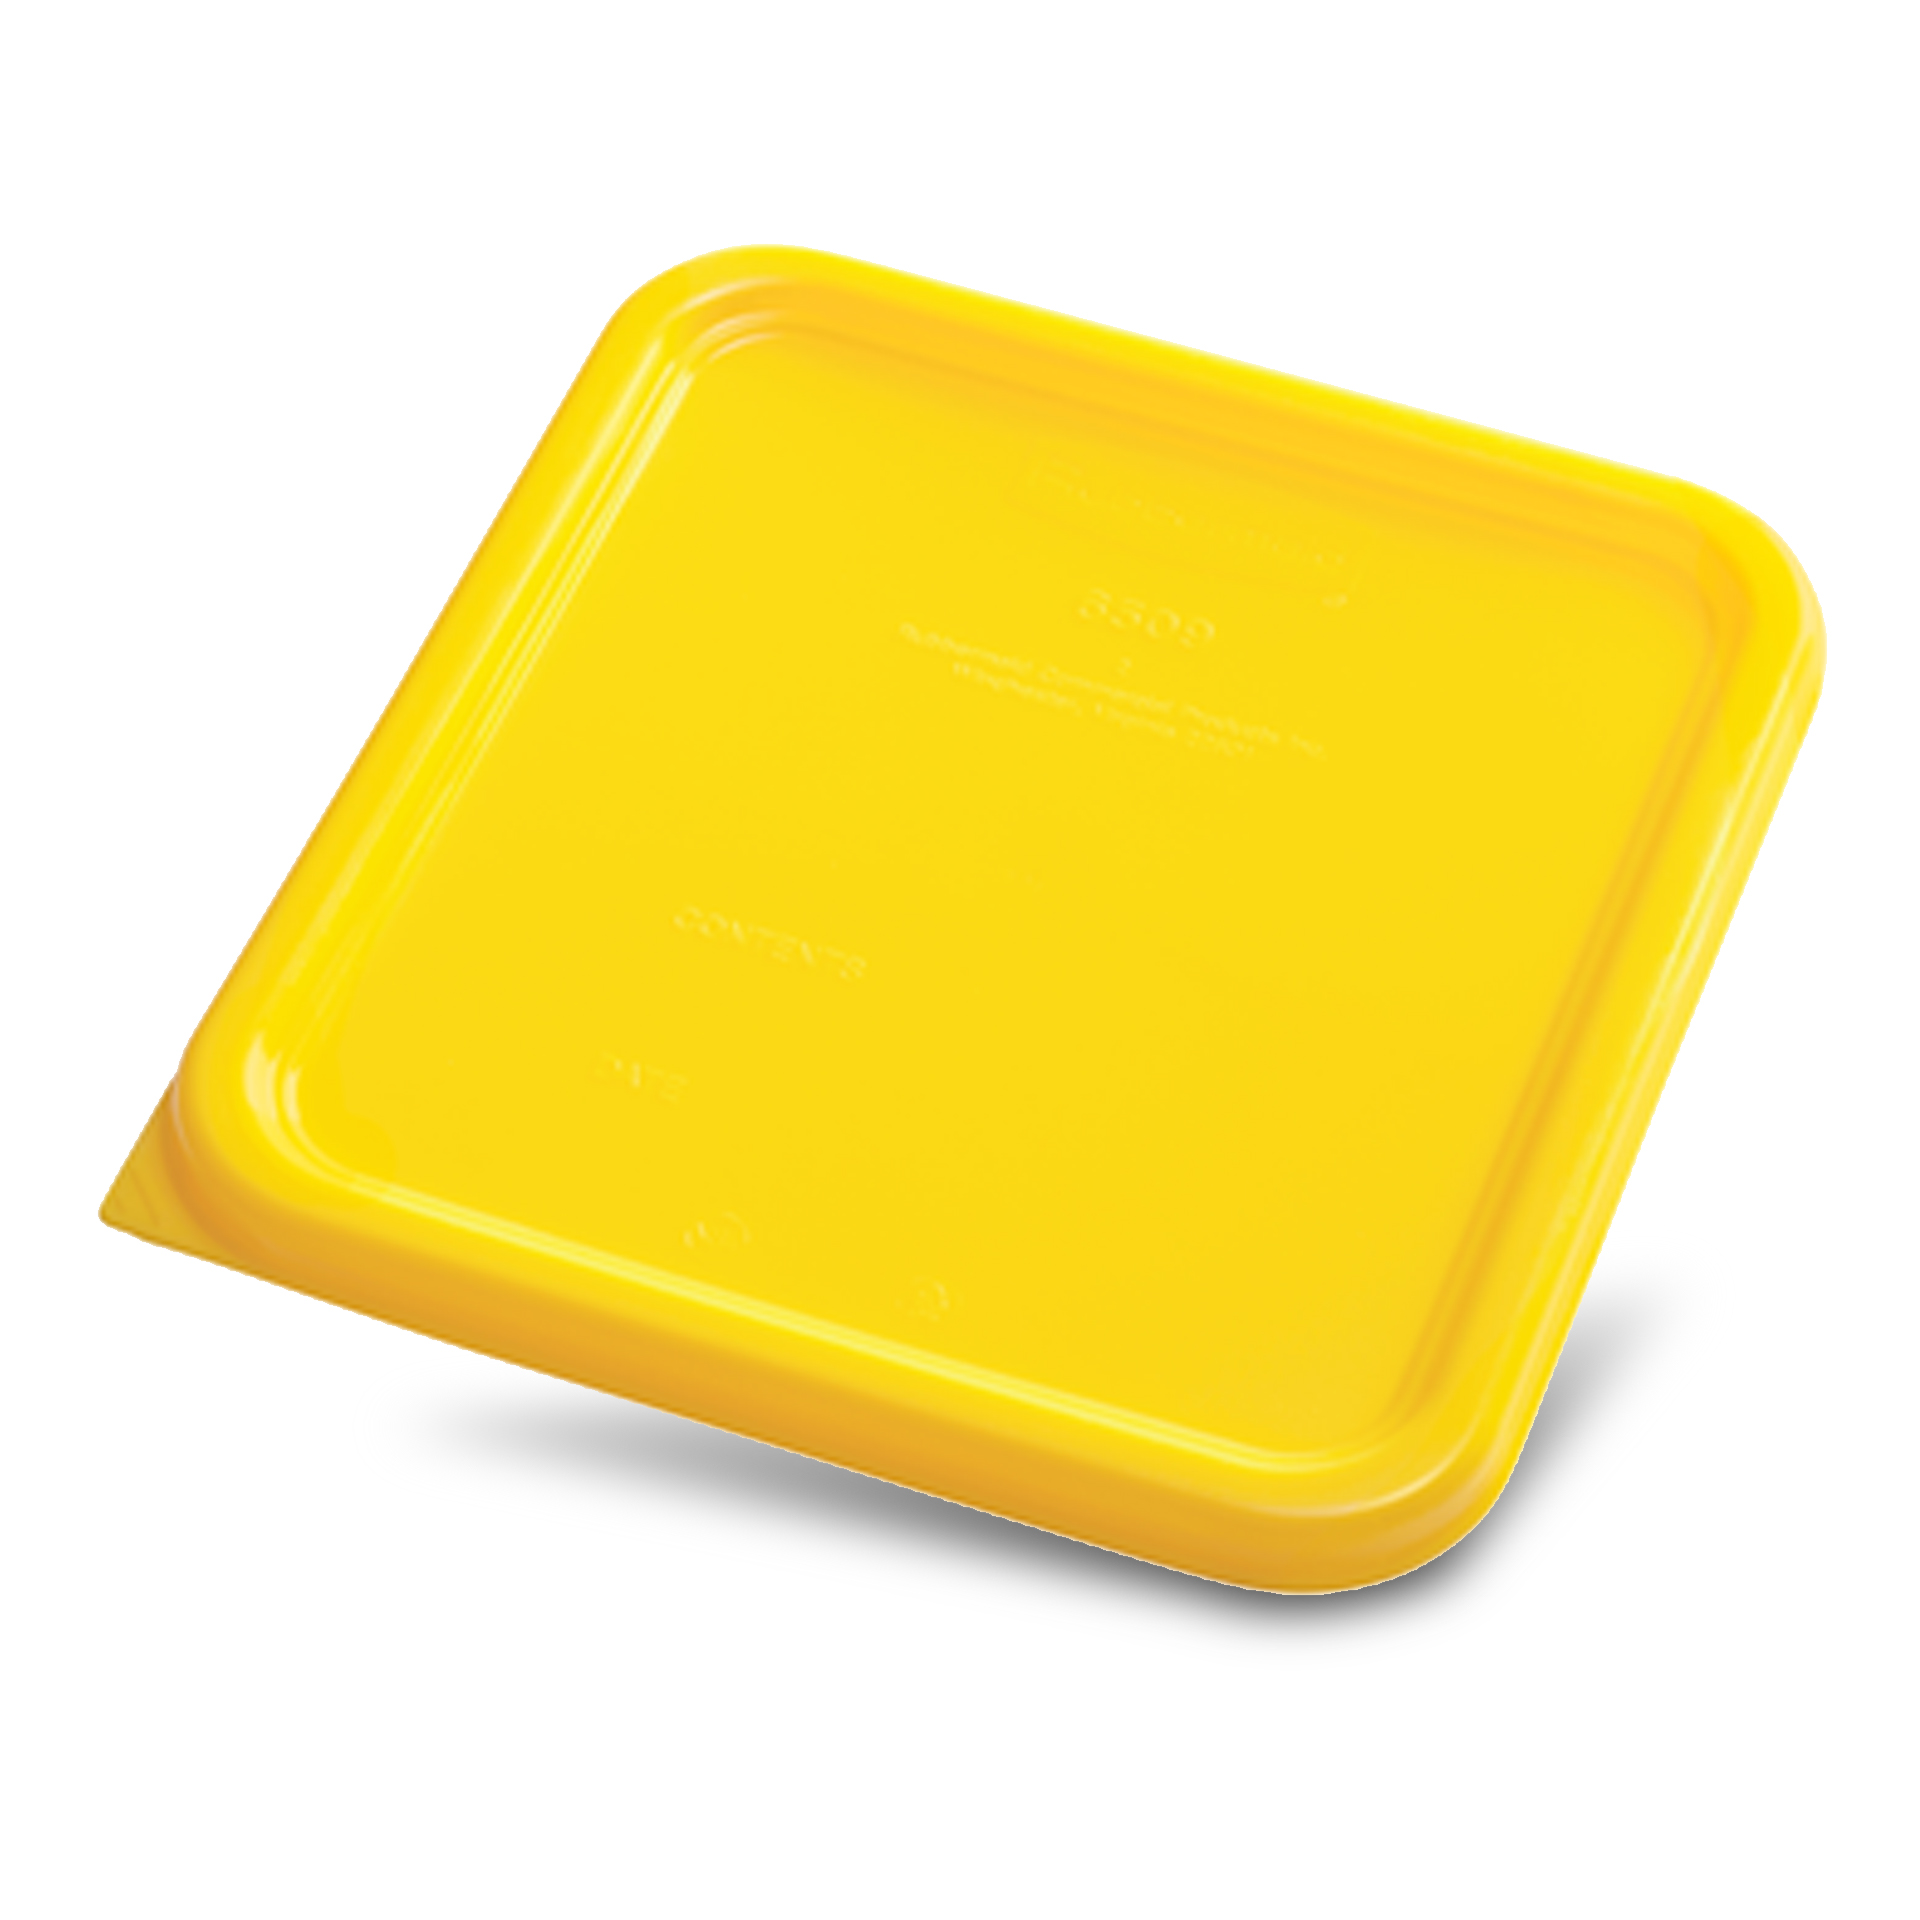 ฝาปิดสี่เหลี่ยม สำหรับกล่องเก็บวัตถุดิบ Square Container ขนาด 4 qt และ 8 qt สีเหลือง